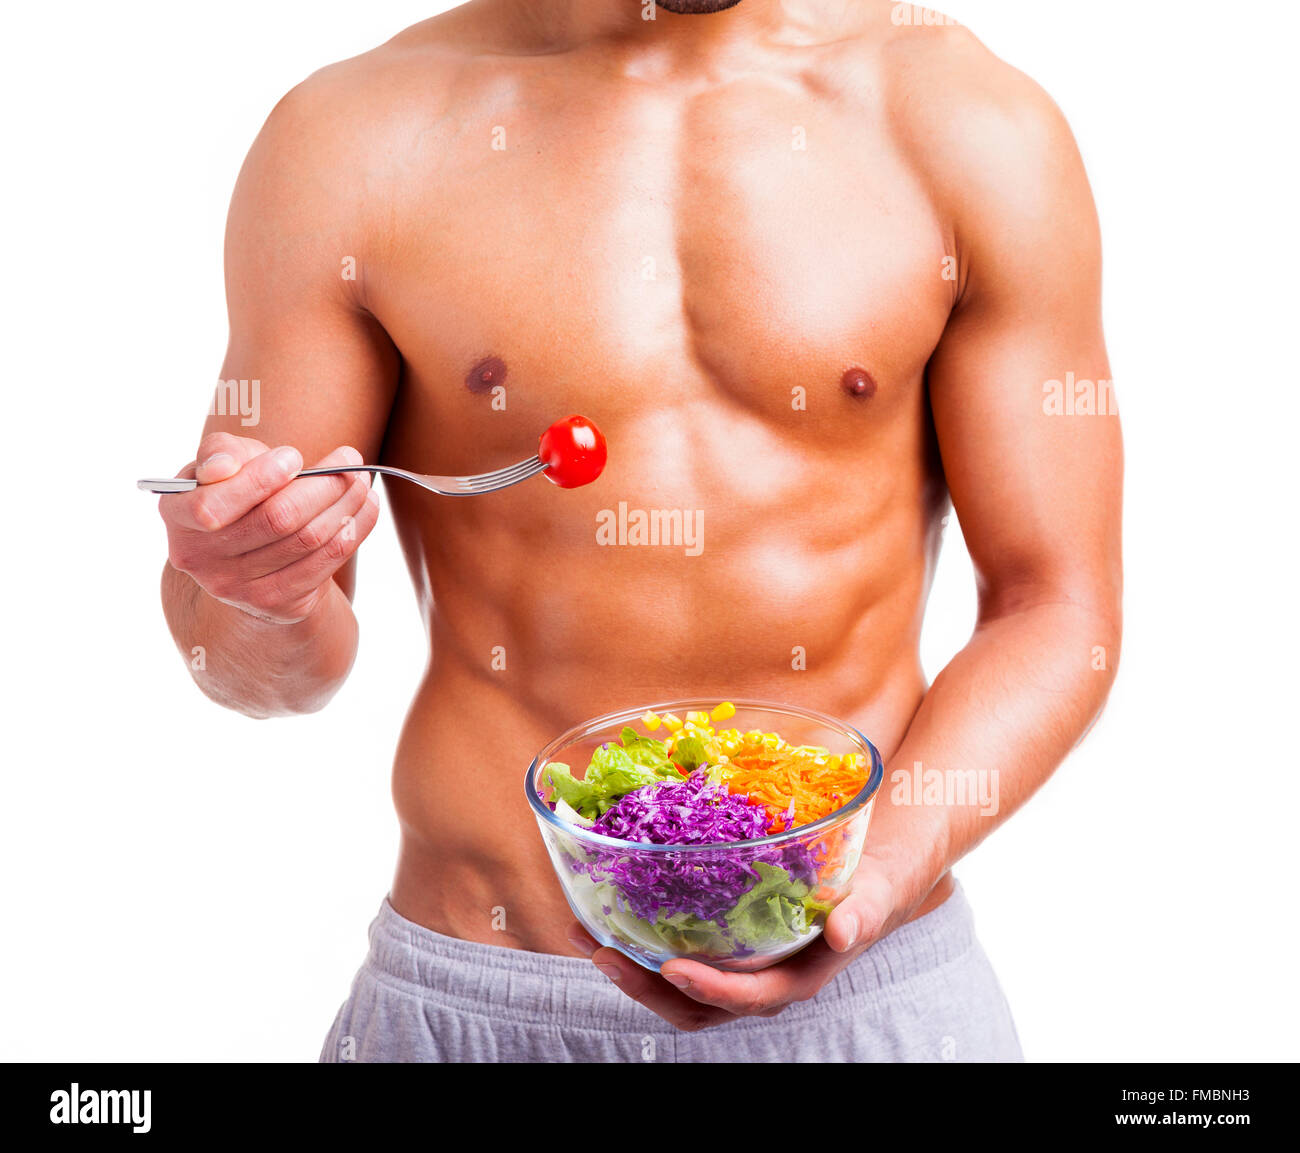 Passen Sie Mann hält eine Schale mit frischem Salat auf weißem Hintergrund Stockfoto